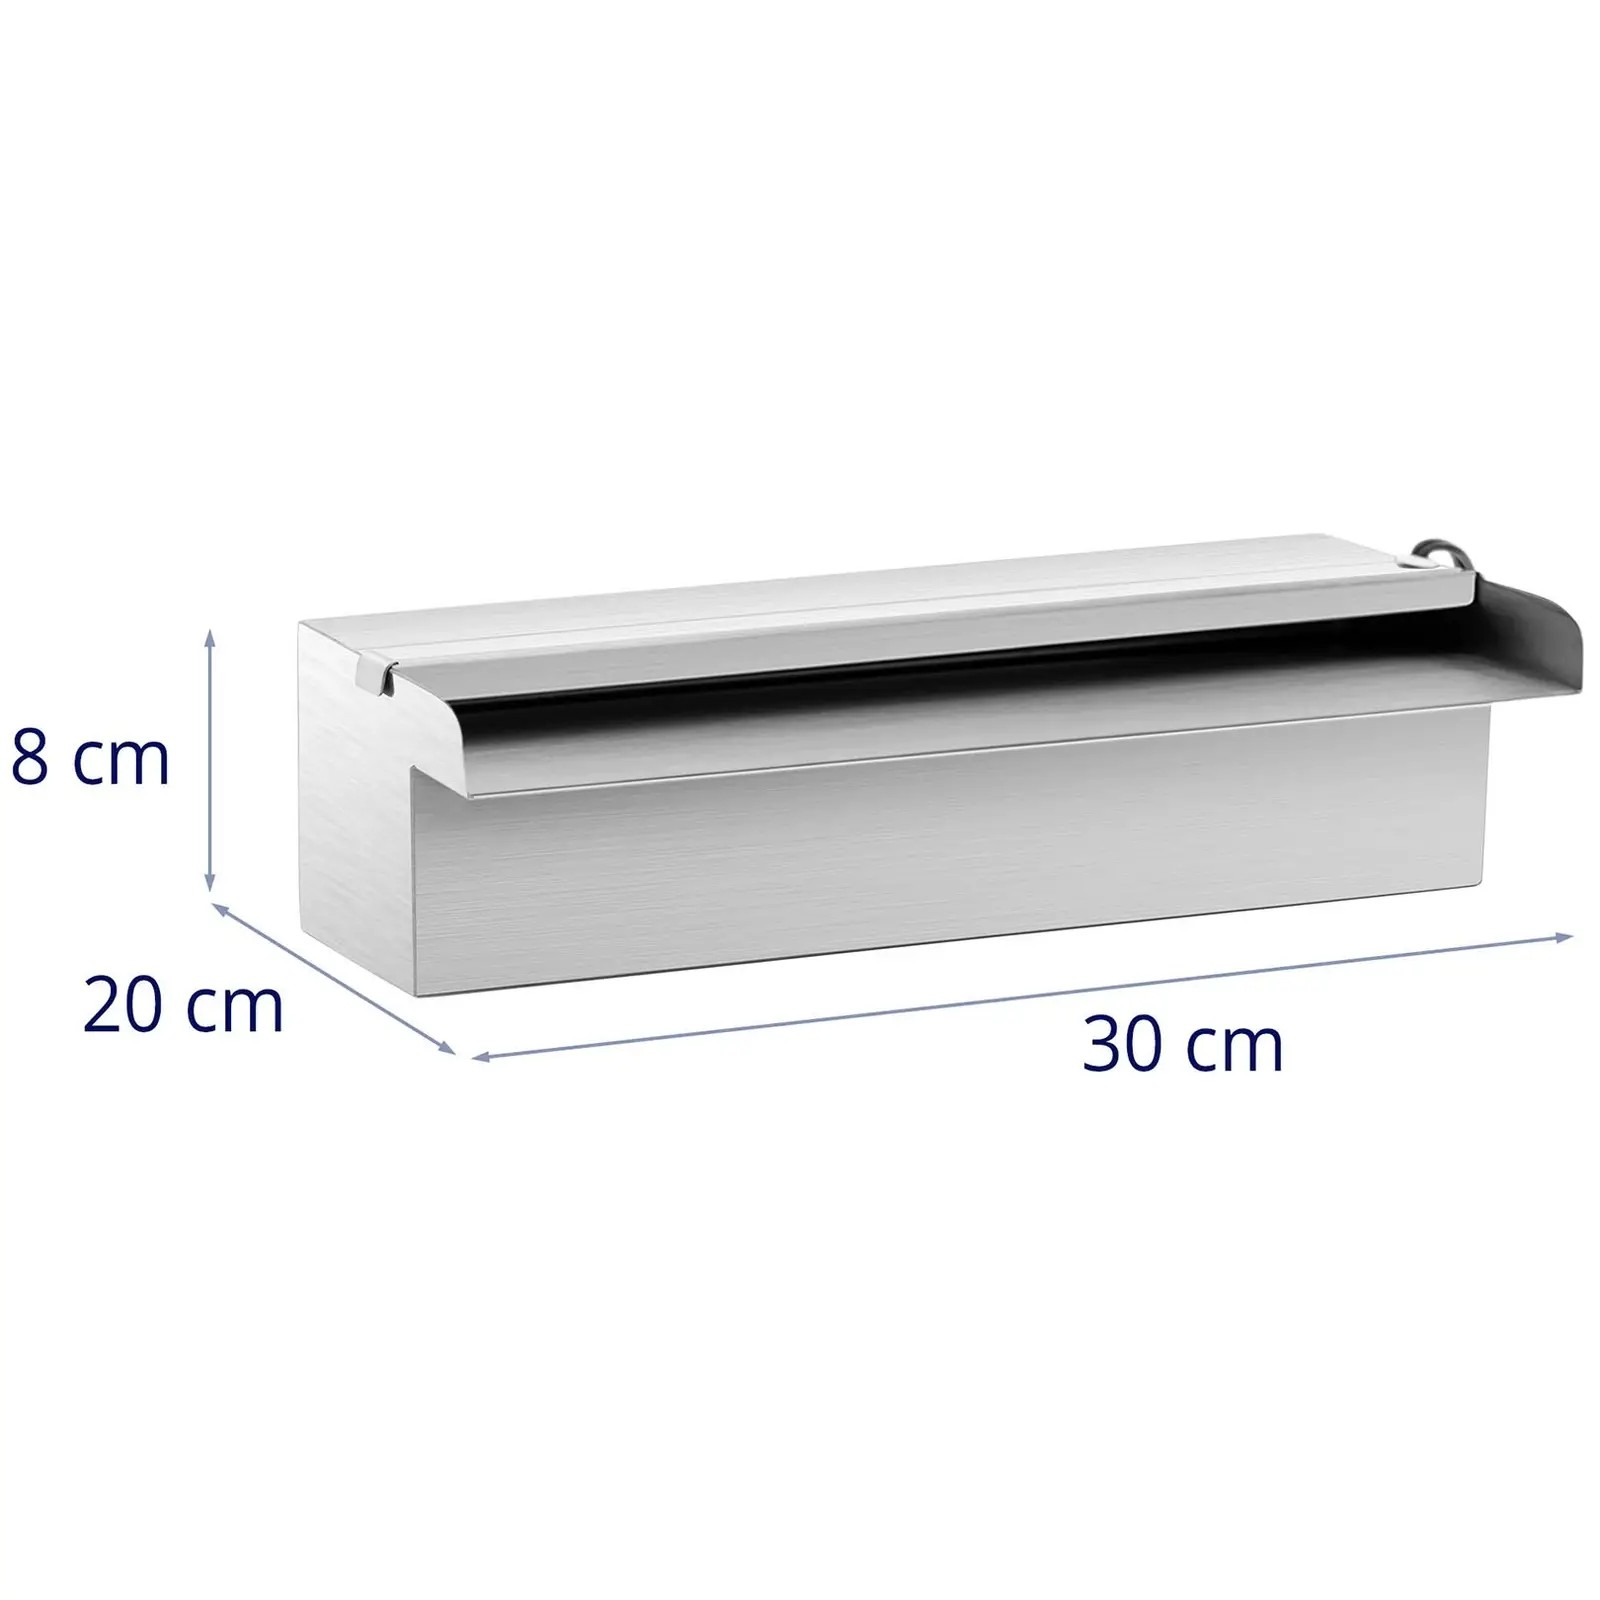 Schwalldusche - 30 cm - LED-Beleuchtung - Blau / Weiß - offener Wasserauslauf